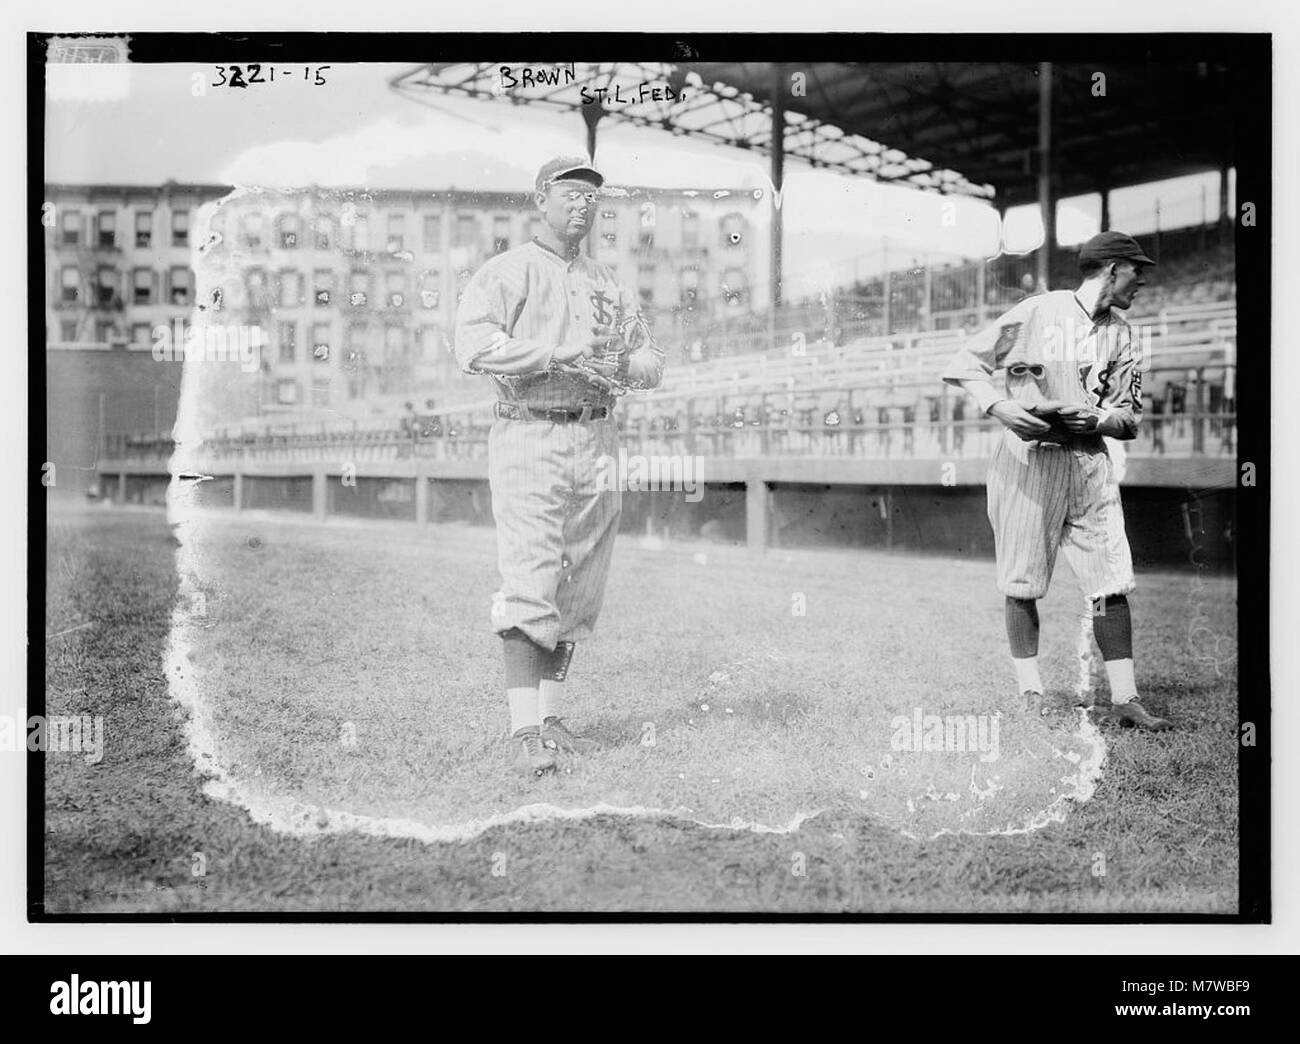 Mordecai Peter Centennial 3 Finger Brown - Chicago Cubs, 1911